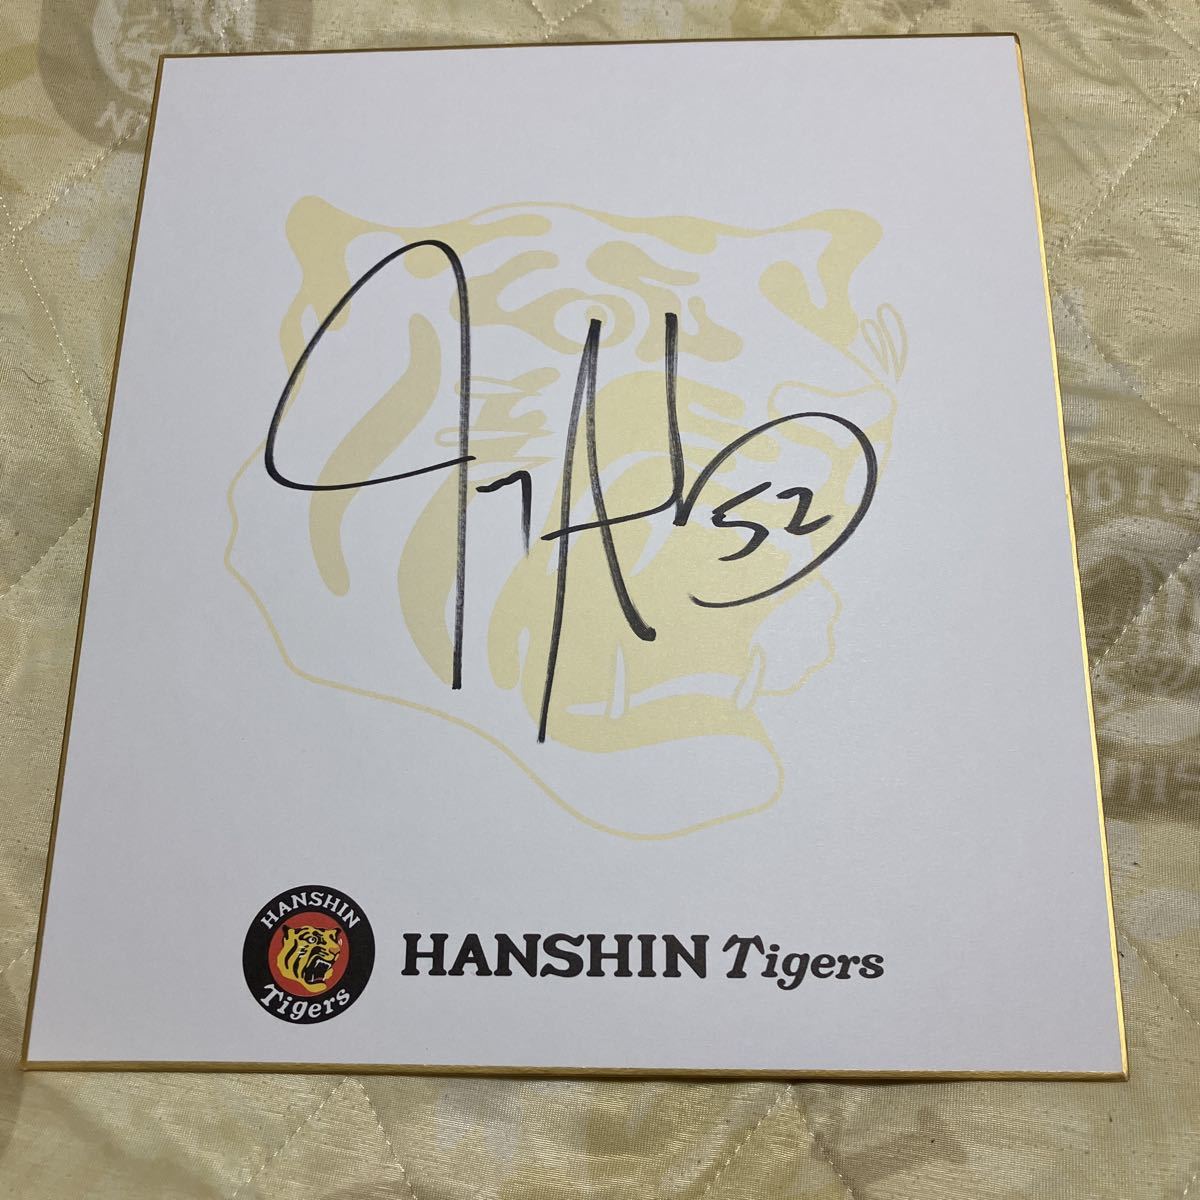 阪神老虎队金沙亲笔签名彩色纸 官方球队非卖品彩色纸, 棒球, 纪念品, 相关商品, 符号